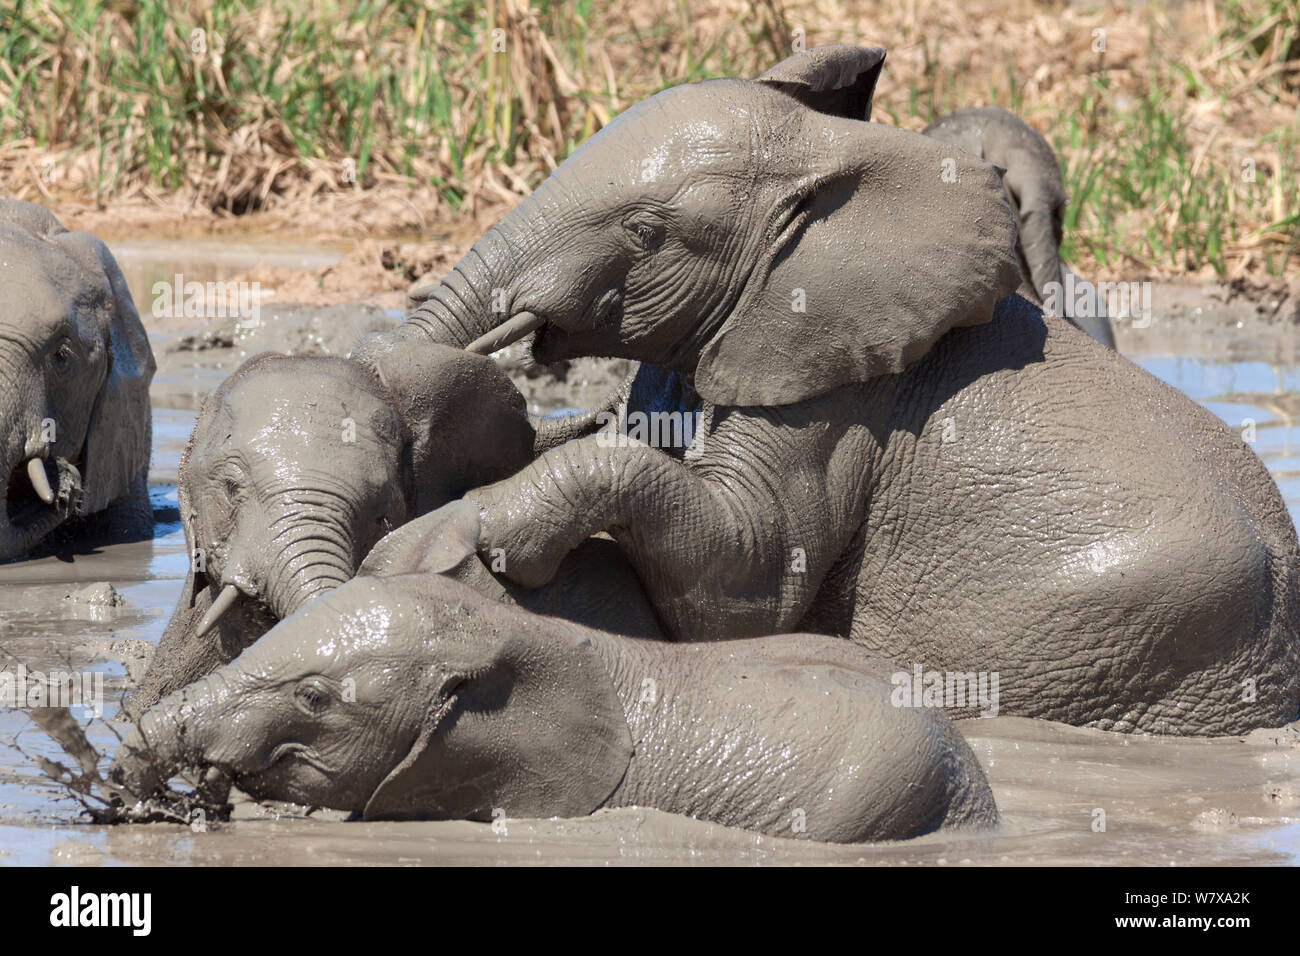 Les éléphants d'Afrique (Loxodonta africana) jouant dans l'eau, l'Addo Elephant National Park, Afrique du Sud, février Banque D'Images